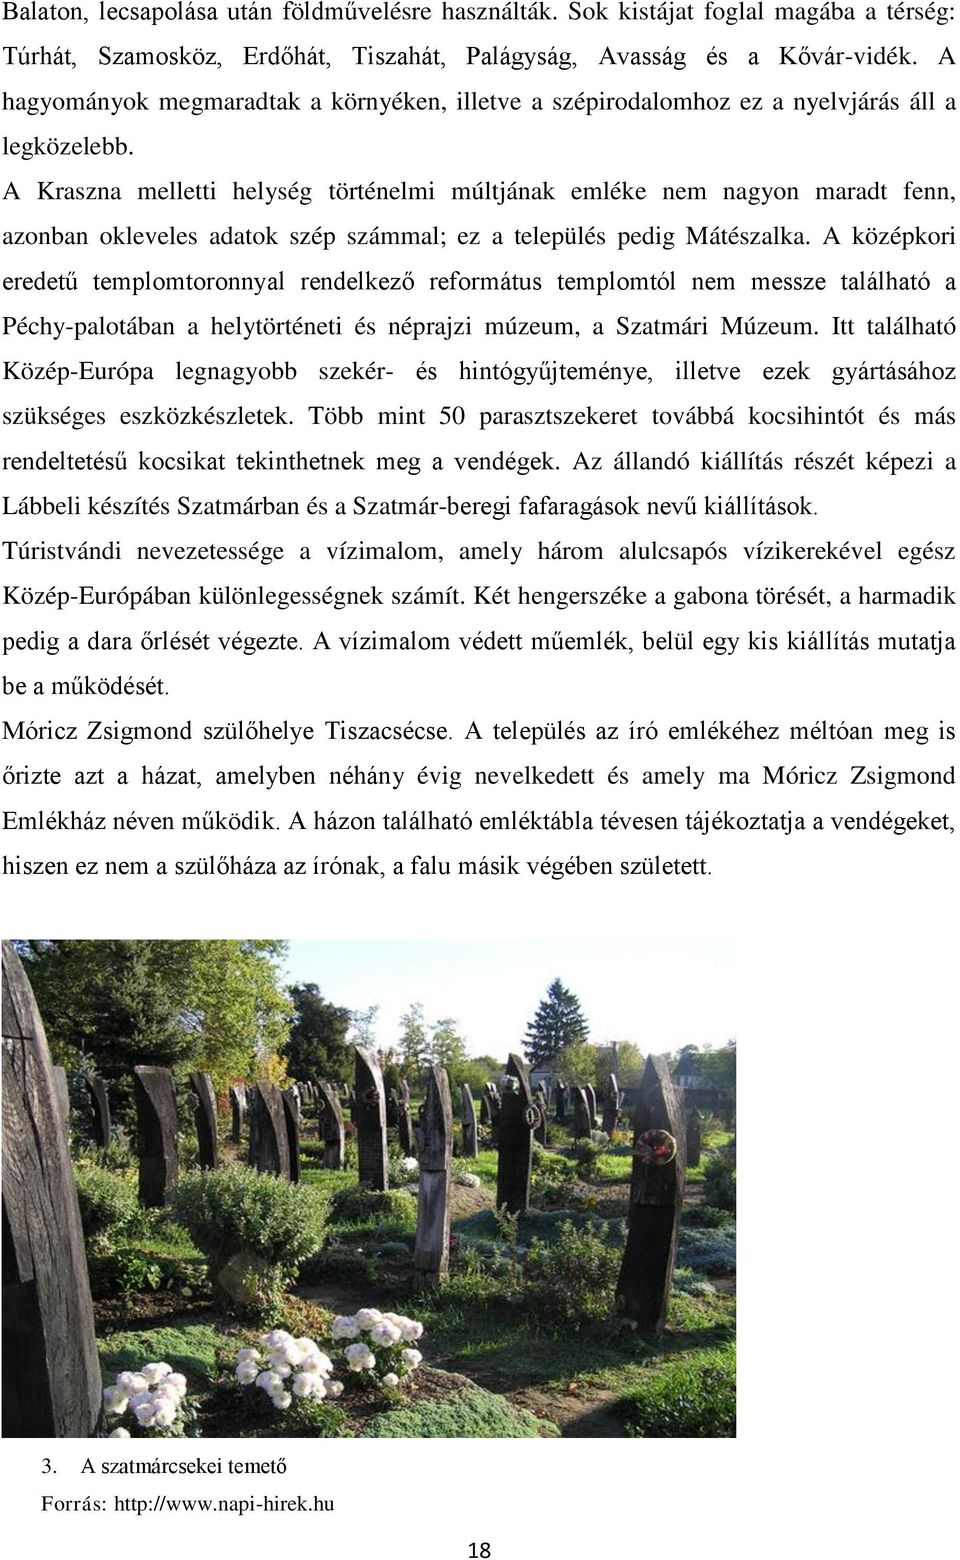 A Kraszna melletti helység történelmi múltjának emléke nem nagyon maradt fenn, azonban okleveles adatok szép számmal; ez a település pedig Mátészalka.